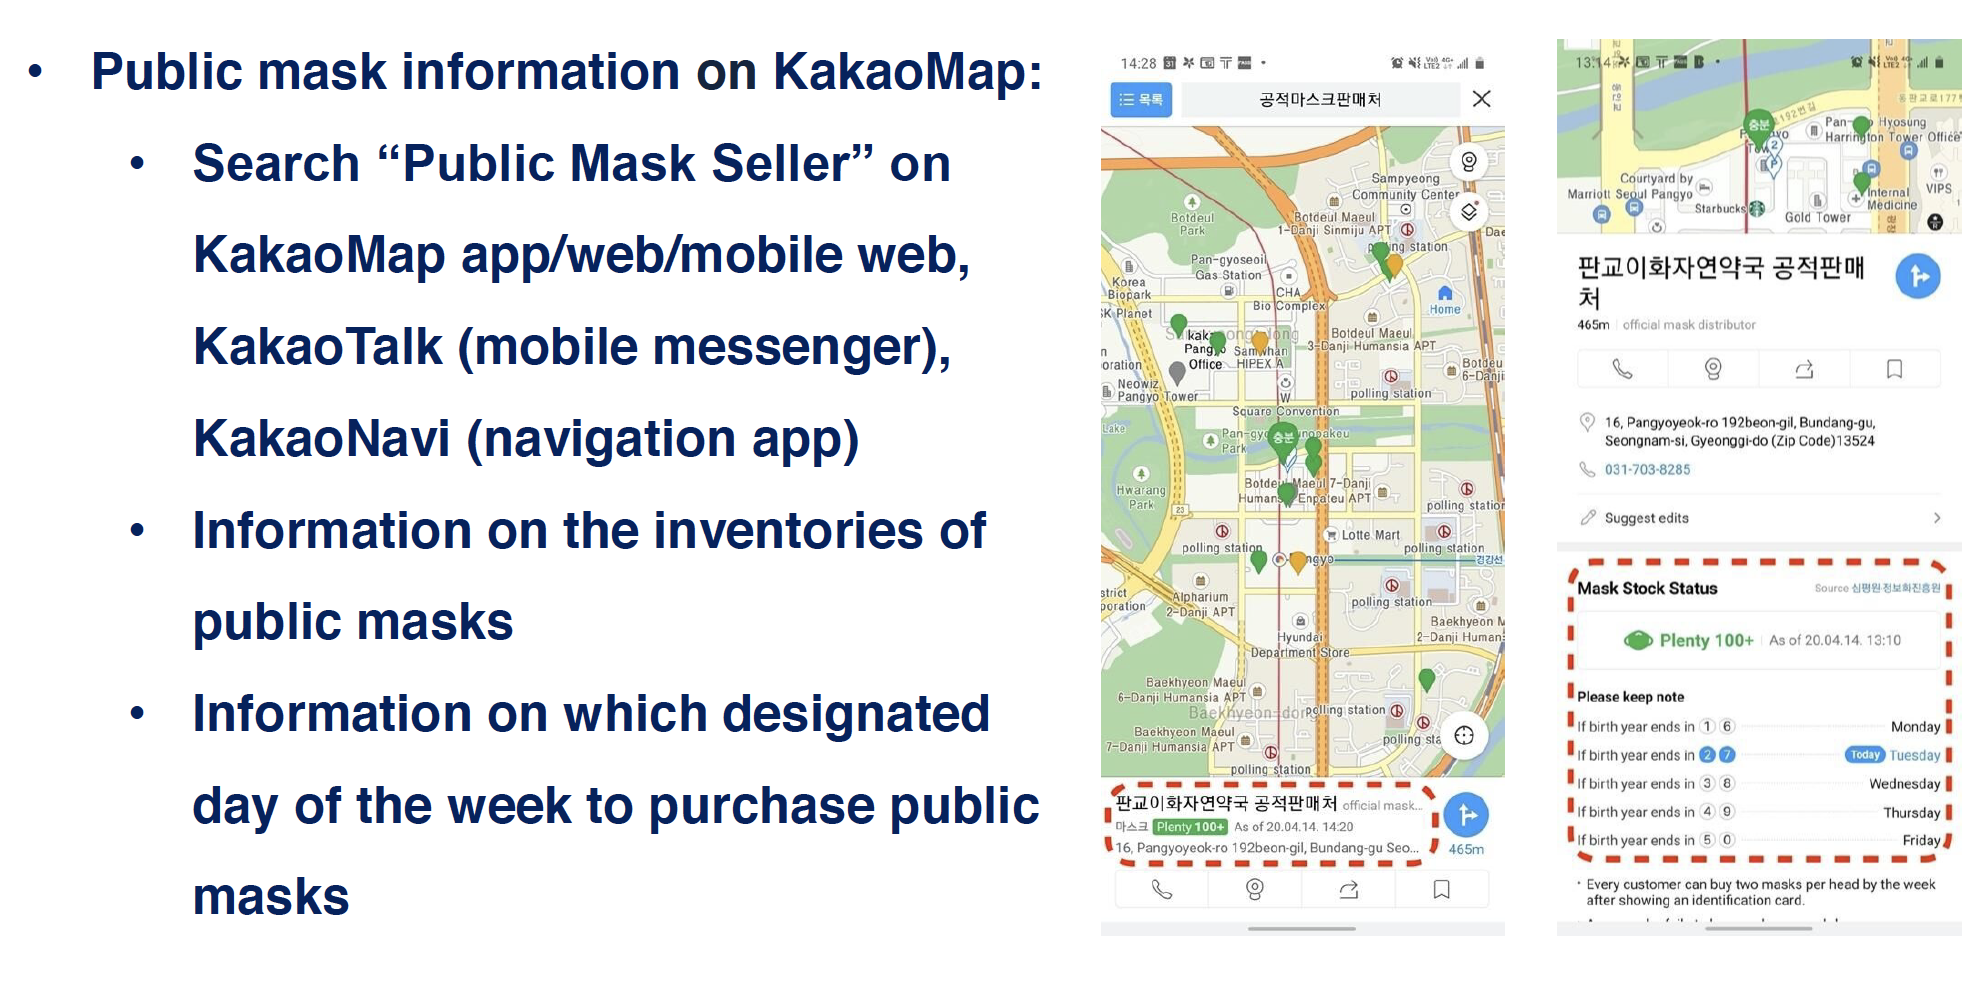 키키오맵의 공적마스크 판매처 제공 서비스 (발표자료에서 발췌)